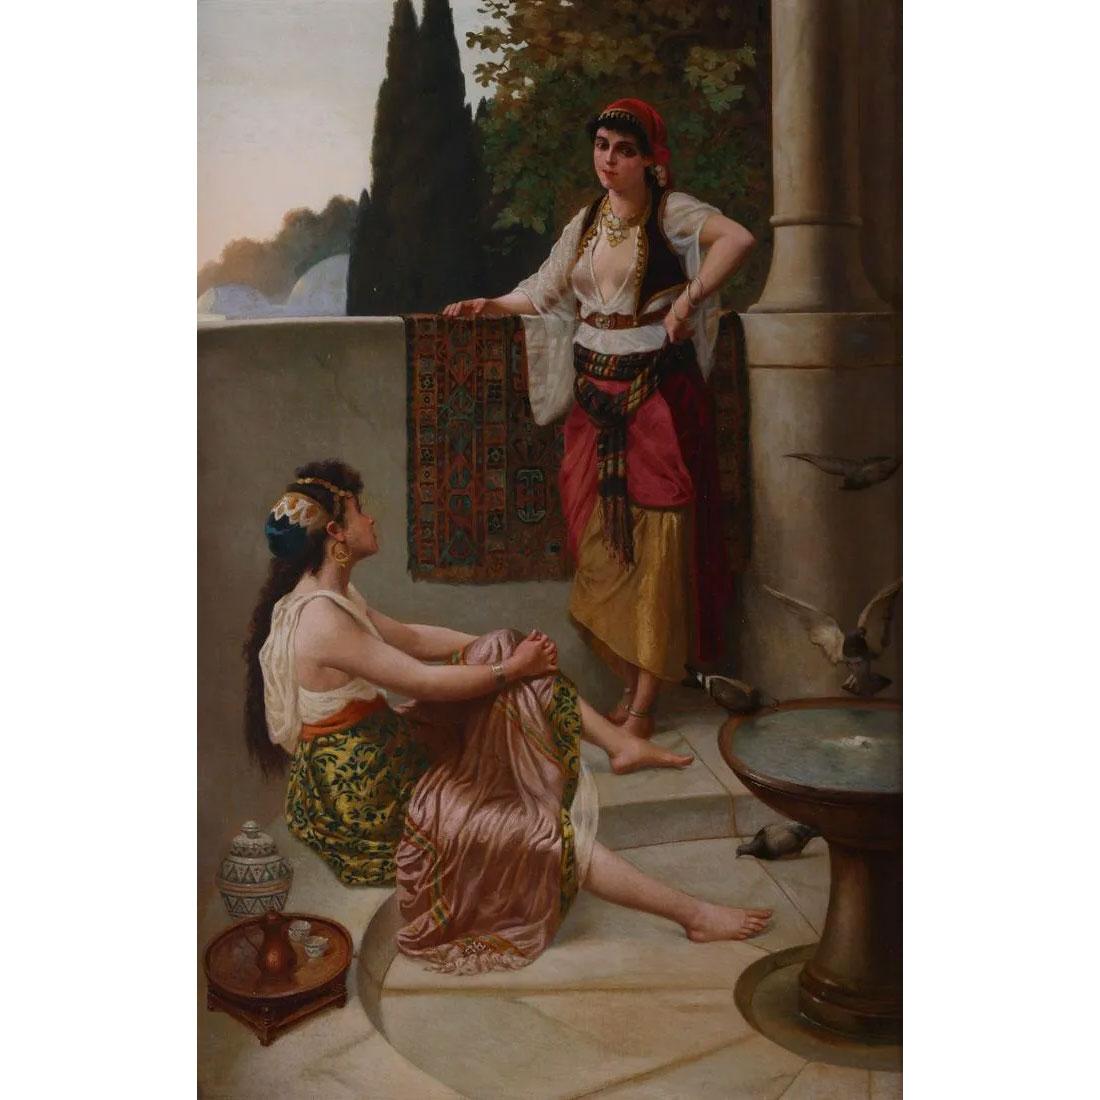 Une belle peinture orientaliste de deux femmes dans un harem par Stiepevich.

Une belle peinture à l'huile orientaliste représentant deux femmes conversant dans un harem.
Artiste : Vincent G. Stiepevich (Russo-Américain, 1841-1910)
Date : 19ème